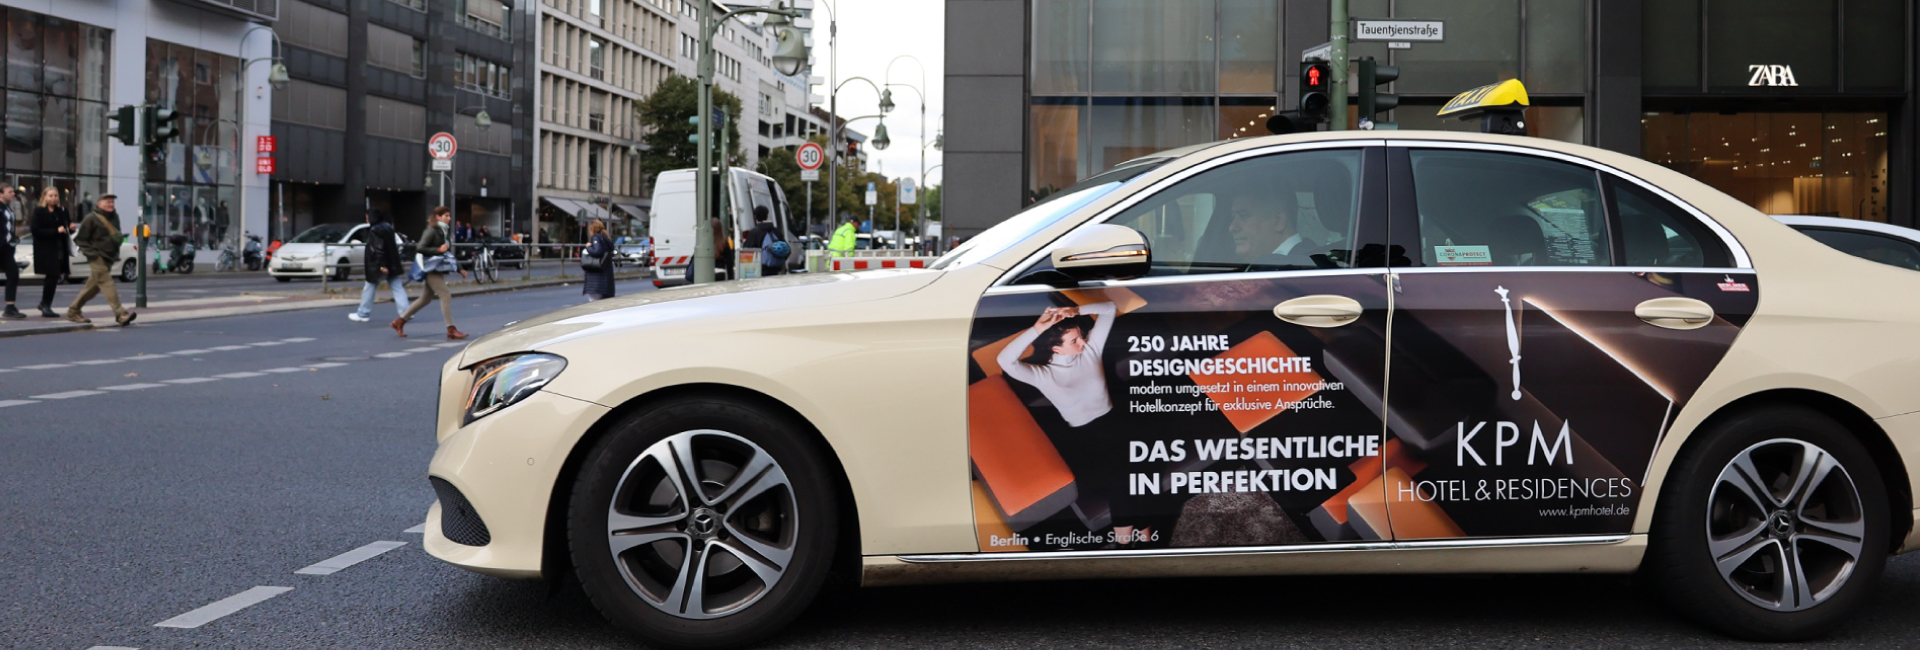 OOH Werbung KPM Berliner Taxiwerbung